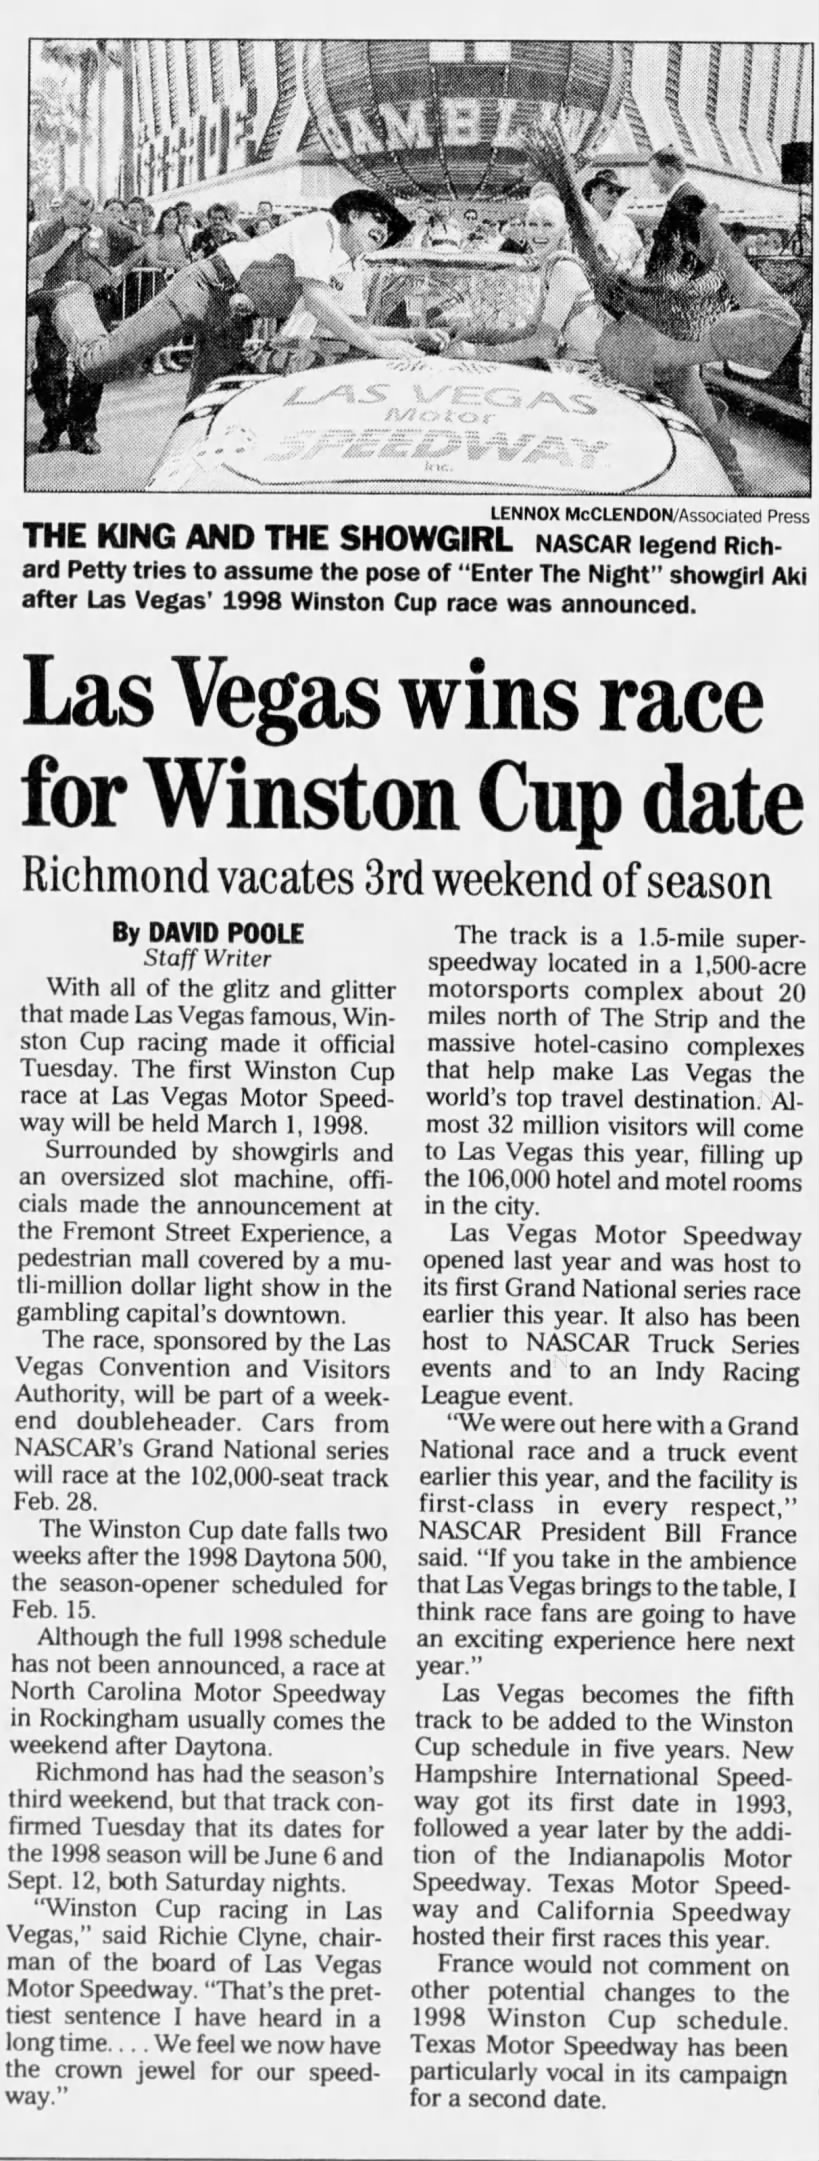 Las Vegas wins race for Winston Cup date